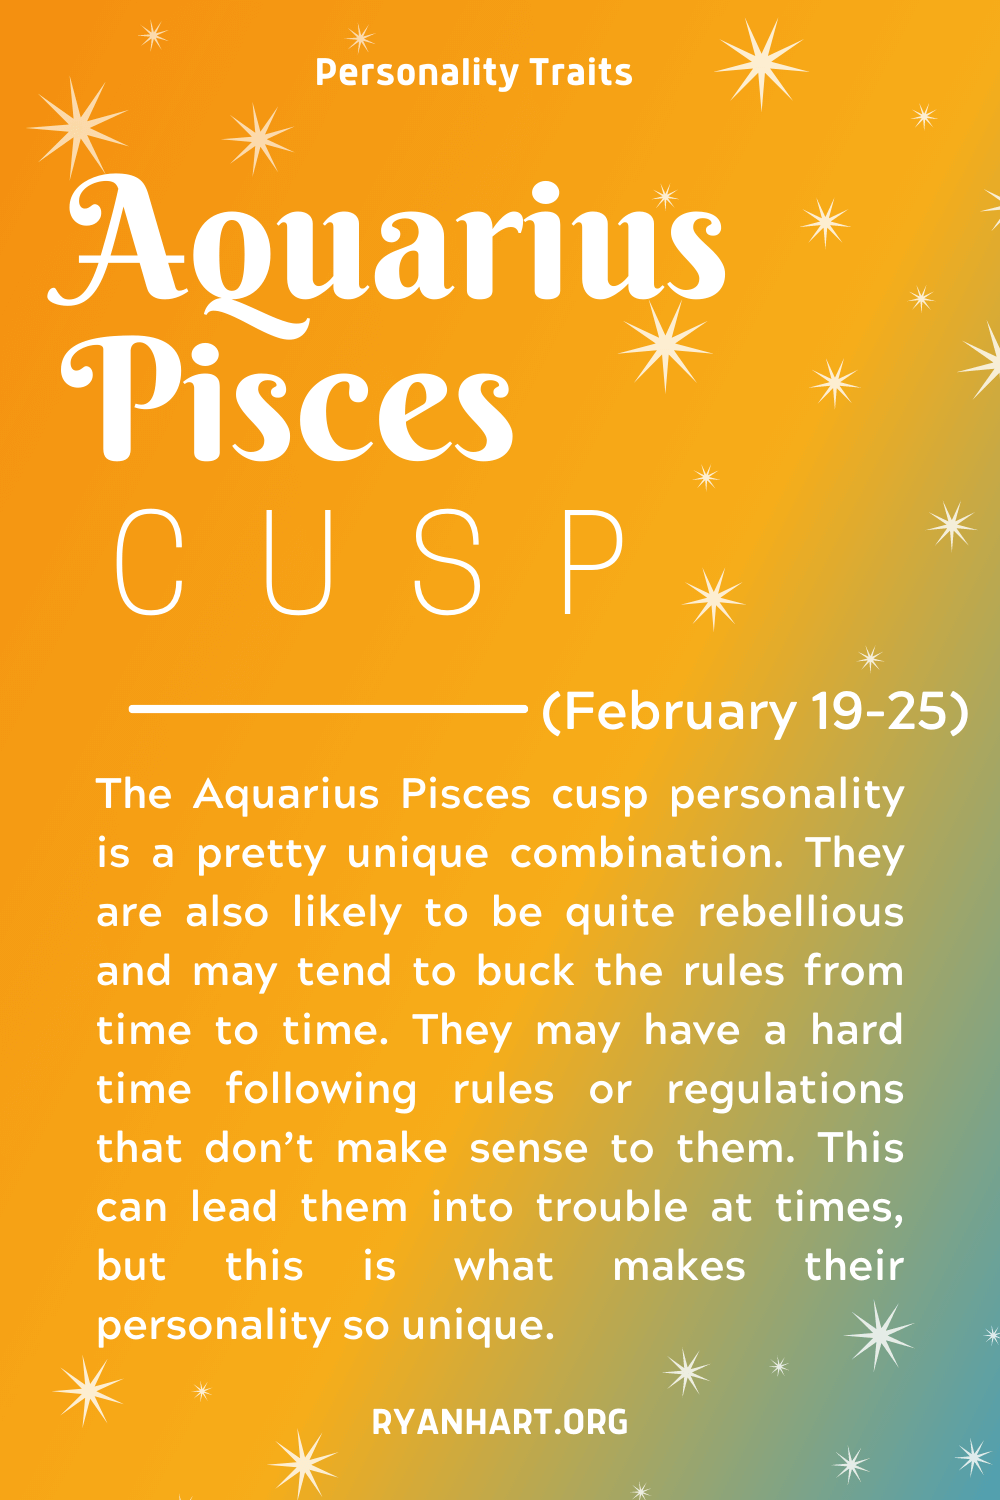  Aquarius Pisces Cusp nortasun ezaugarriak